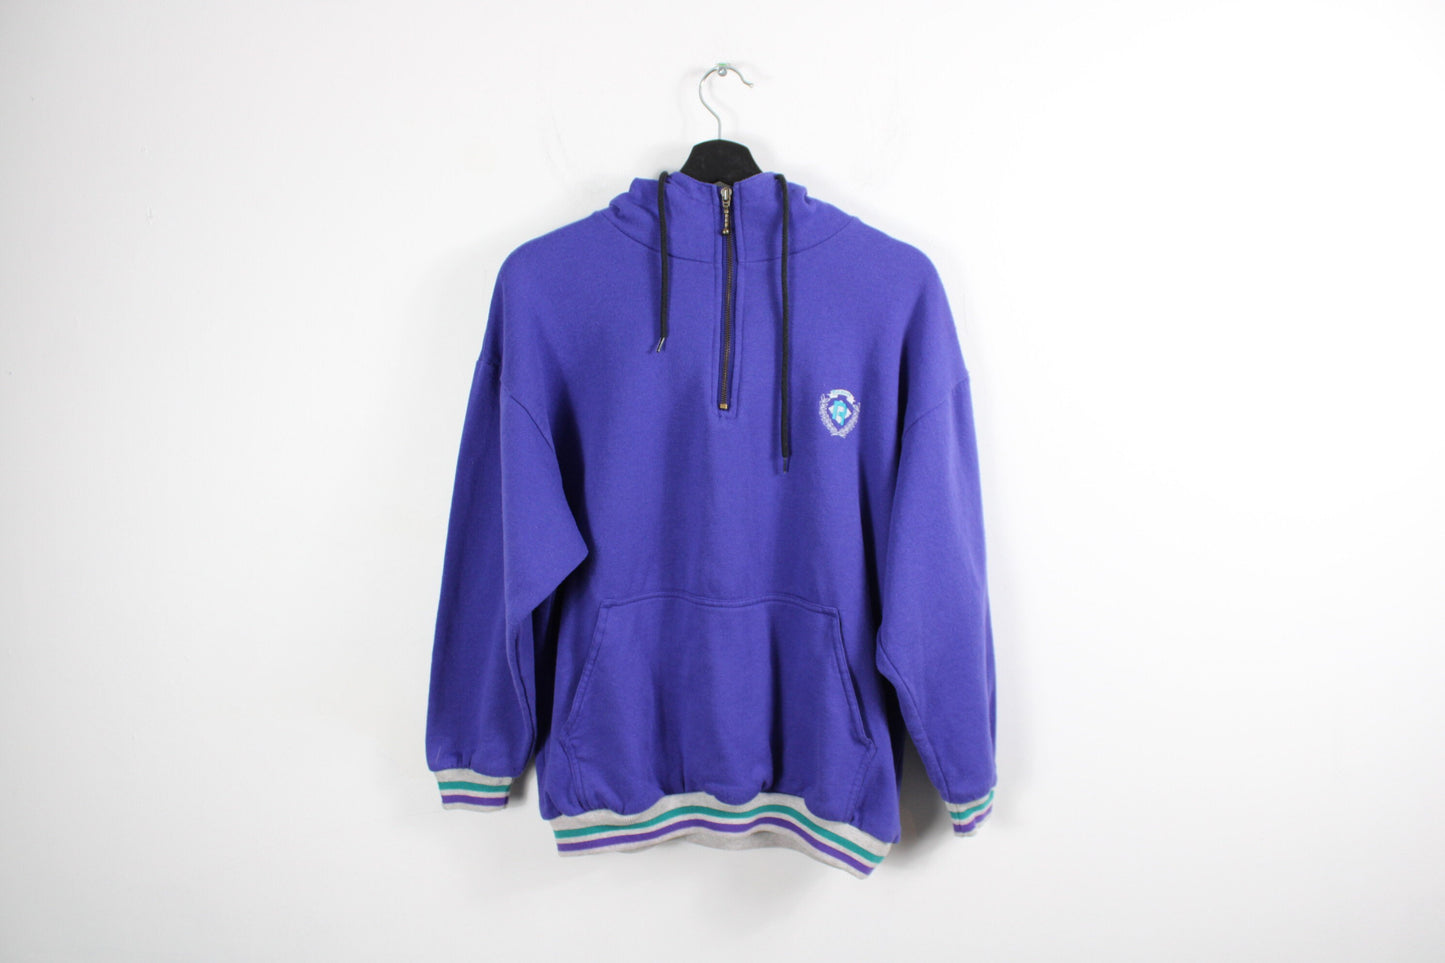 Reebok Hoodie / Vintage 90s Athletic Hoody Sweater / Sportswear Hooded Sweatshirt Clothing